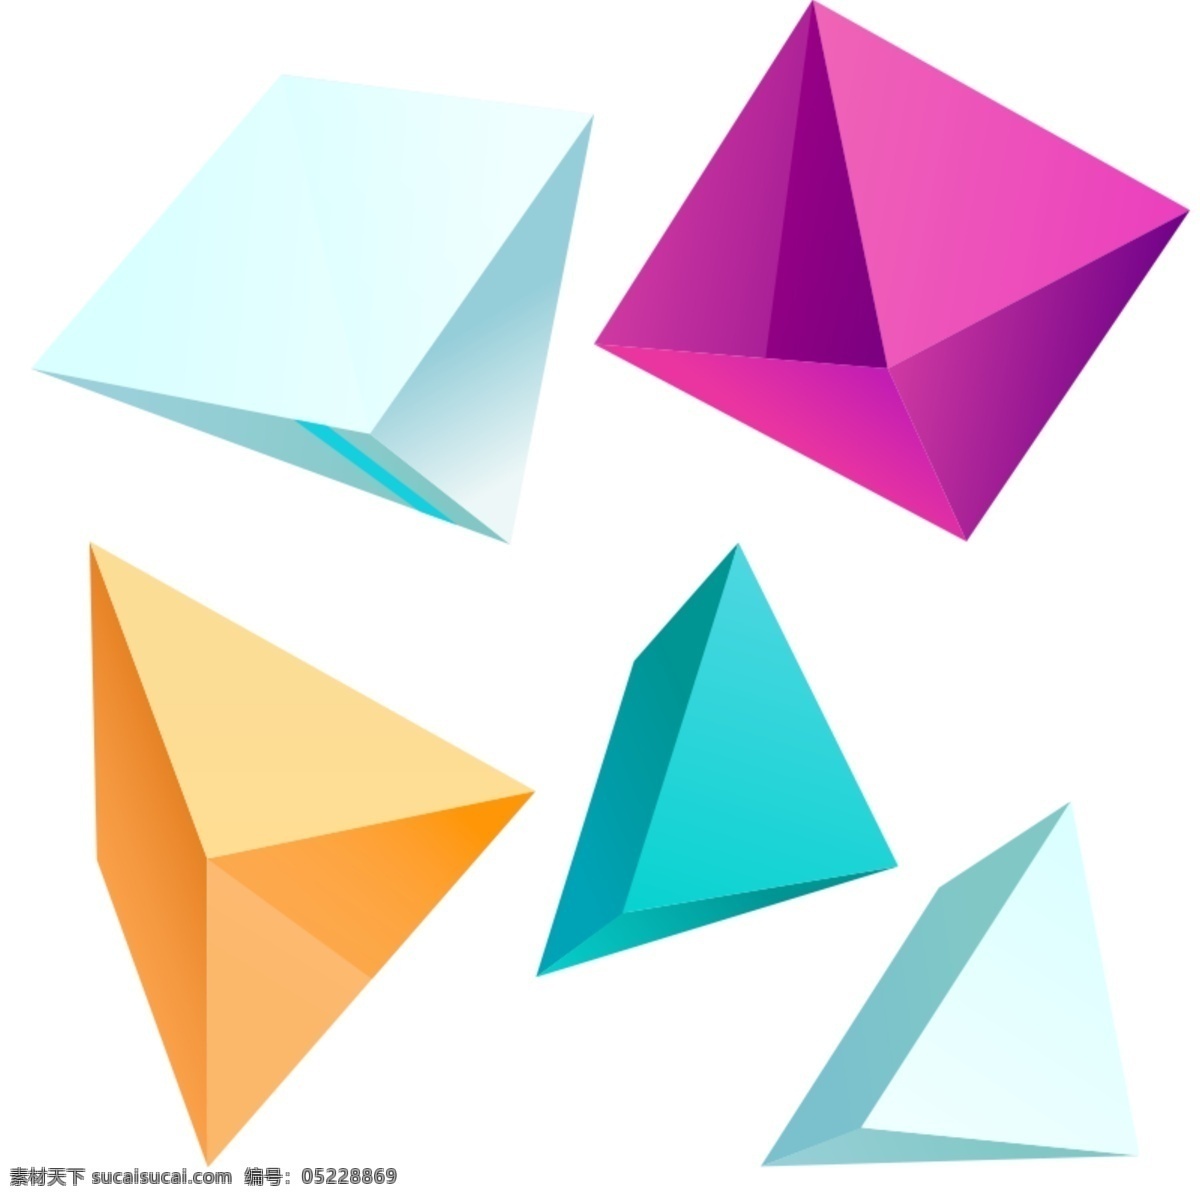 几何立体图形 几何 立体 图形 源文件 彩色 三角形 菱形 椎体